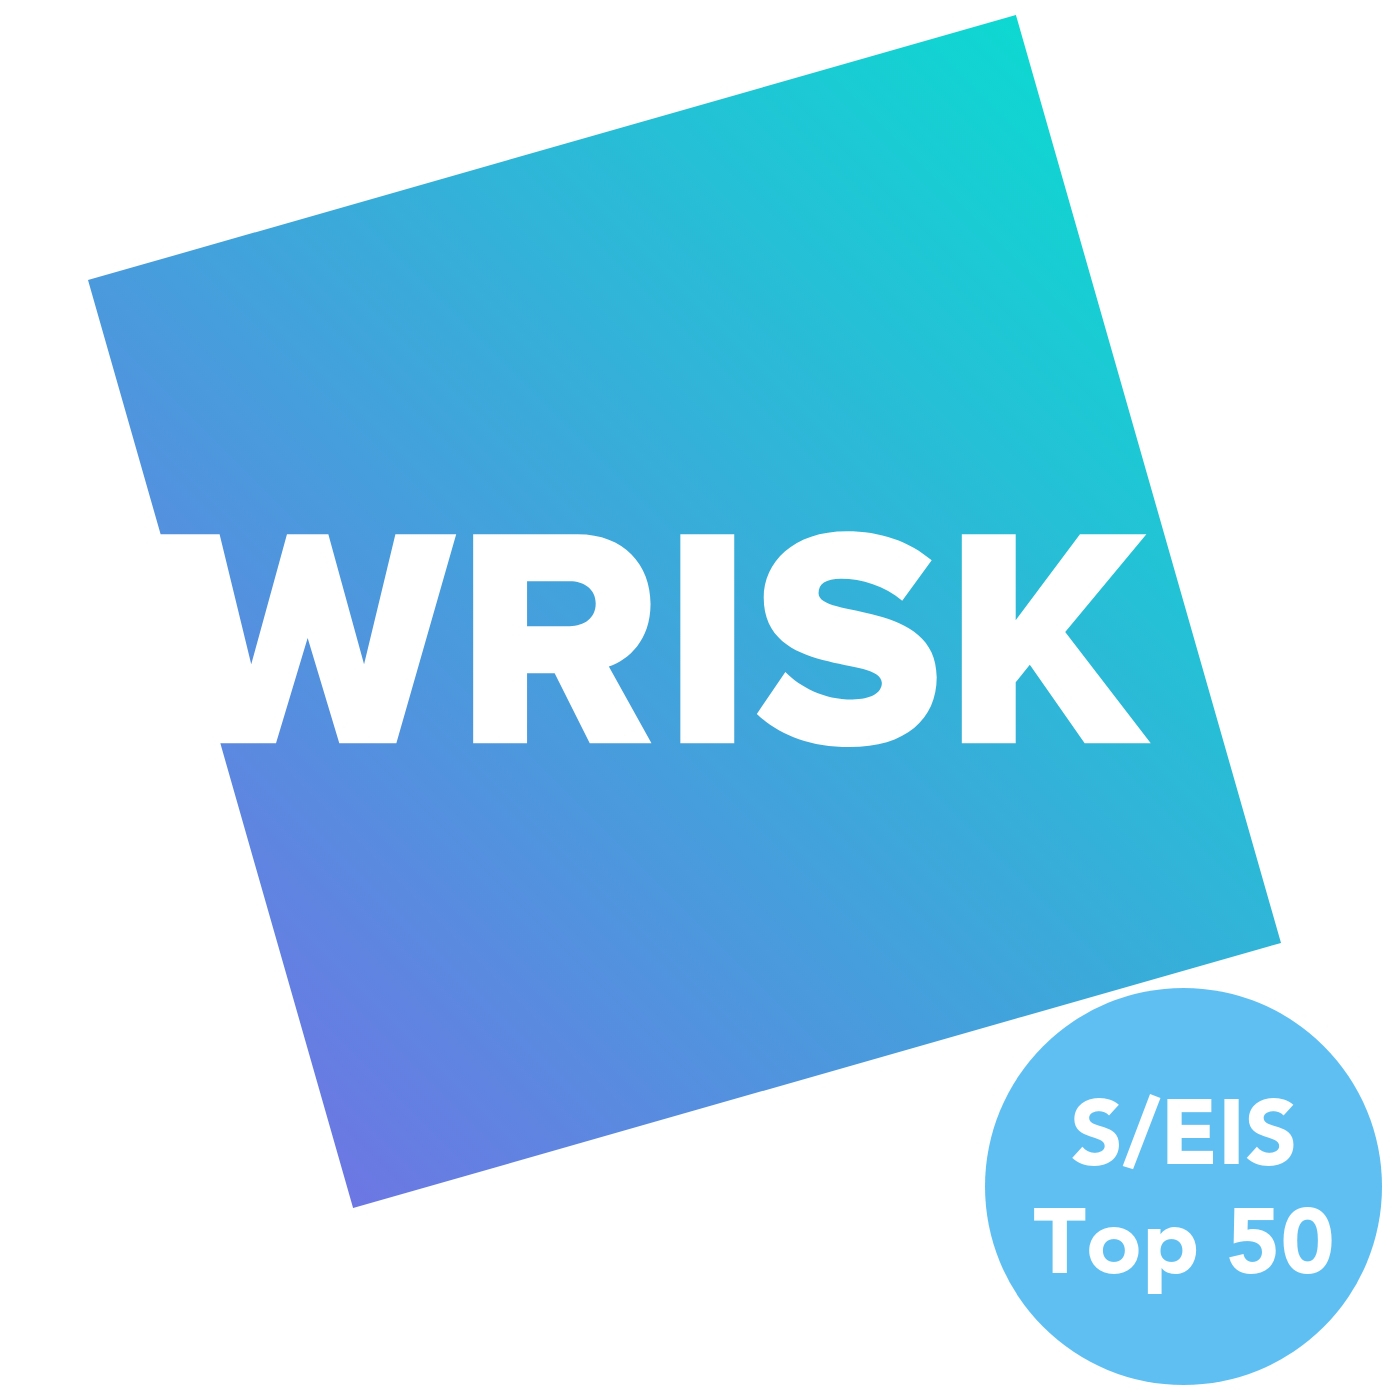 Wrisk | S/EIS Top 50